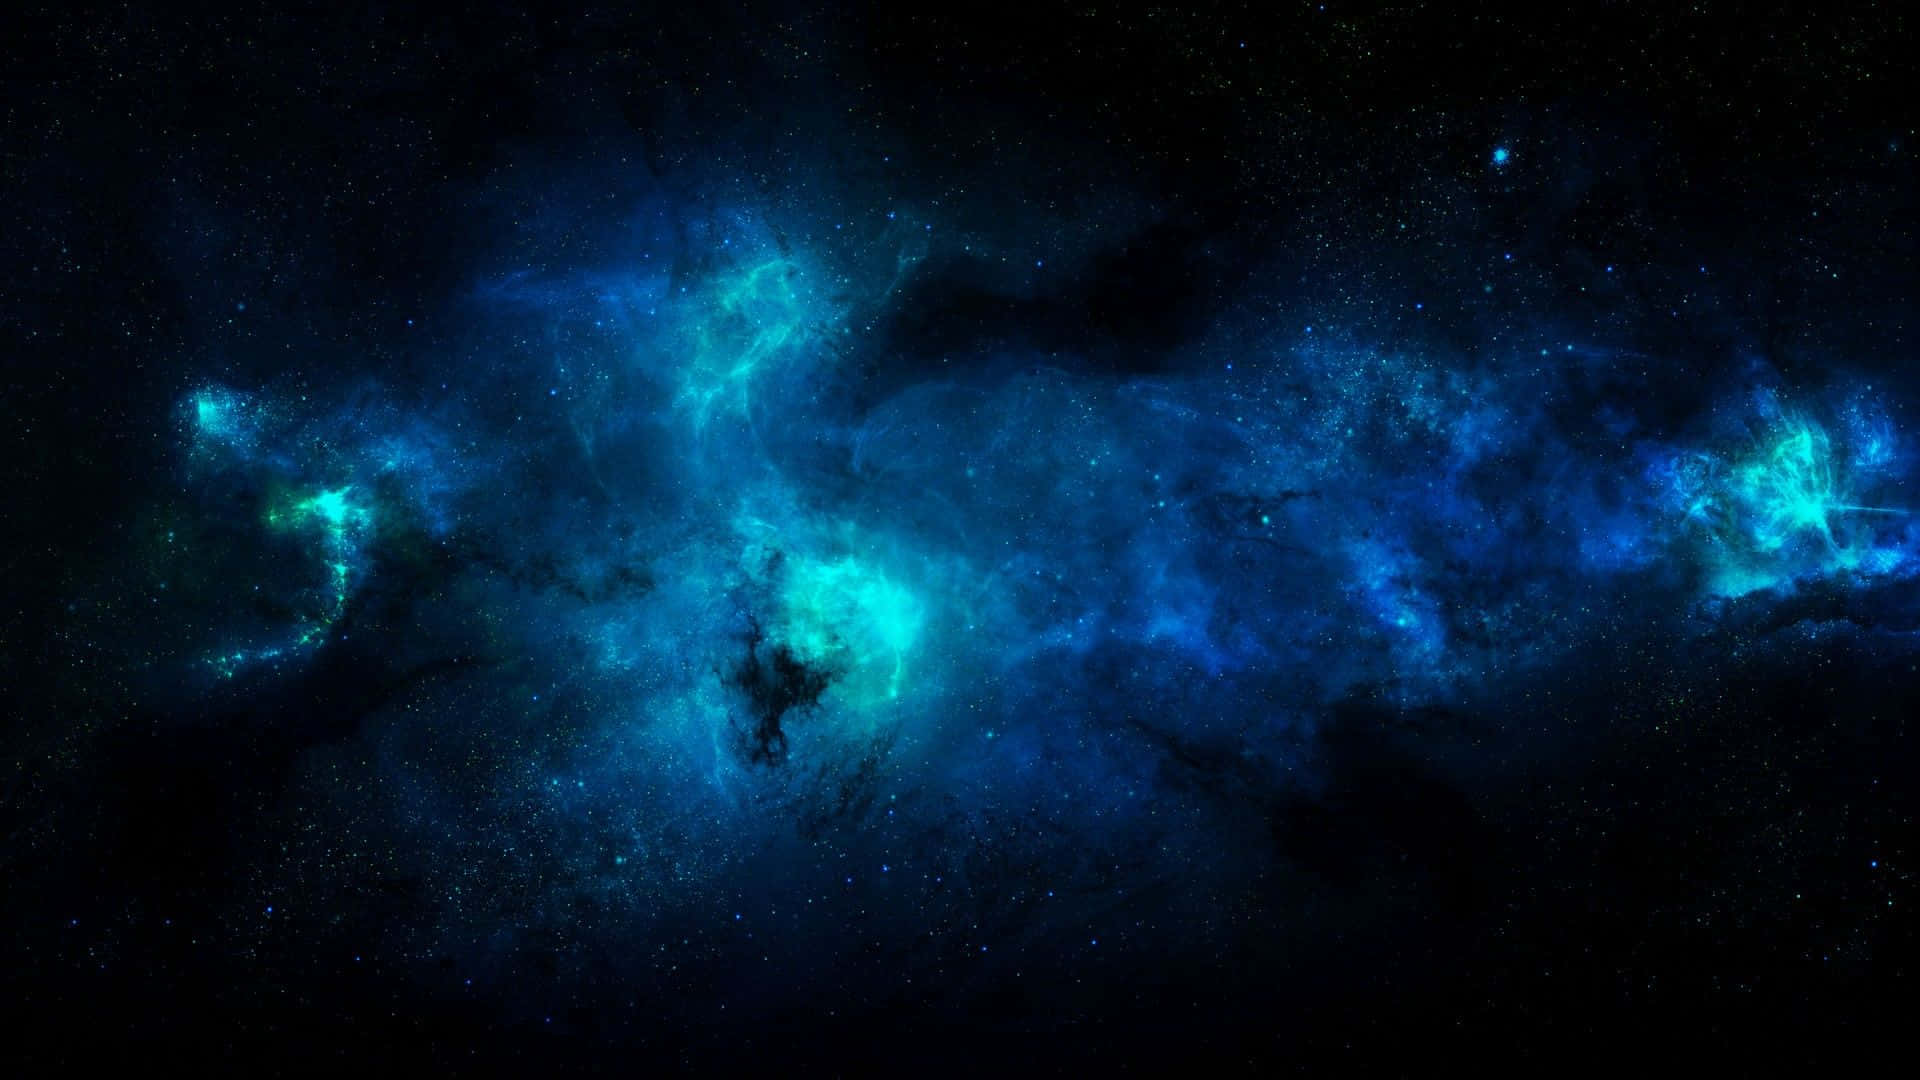 Unarappresentazione Solitaria Di Bellezza E Serenità, Questa Cool Blue Galaxy Ti Condurrà Sicuramente In Un Altro Universo. Sfondo